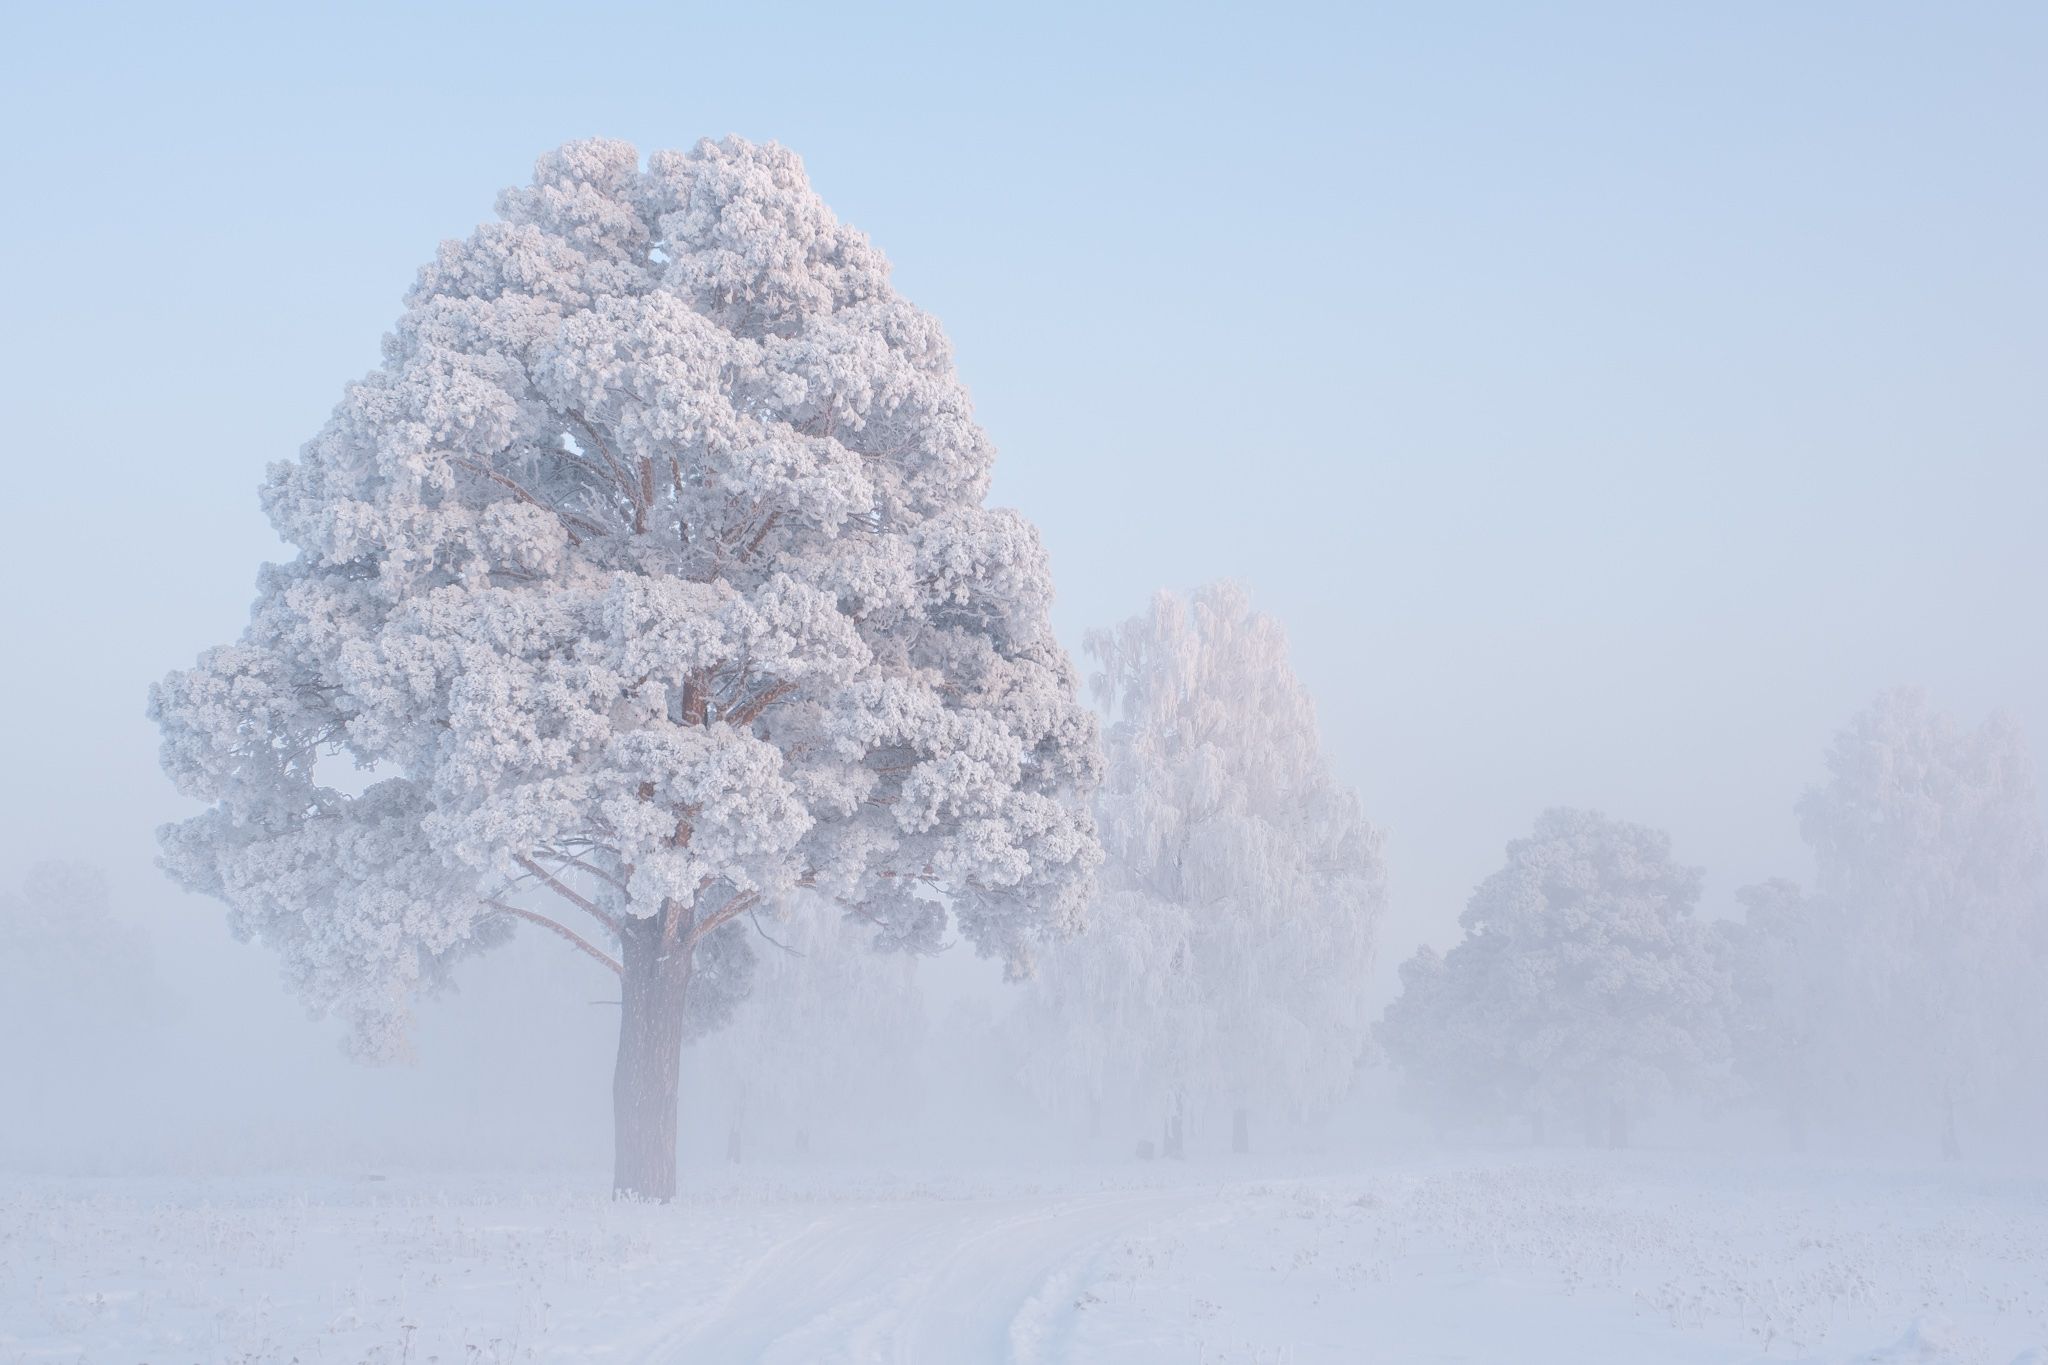 зима, зимний пейзаж, пейзаж ,снег, мороз, туман, winter, fujifilm, Константин Леонтьев